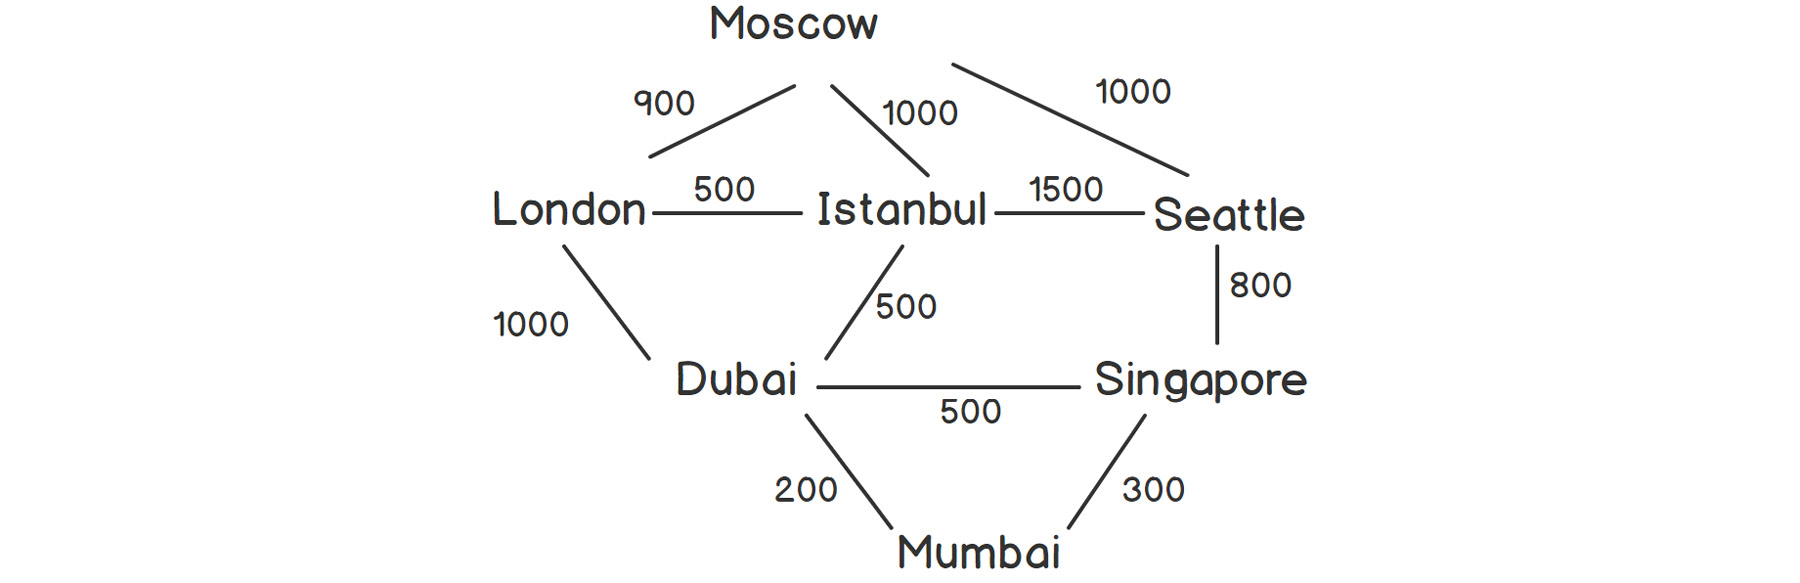 Figure 2.18: Aviation network between some cities